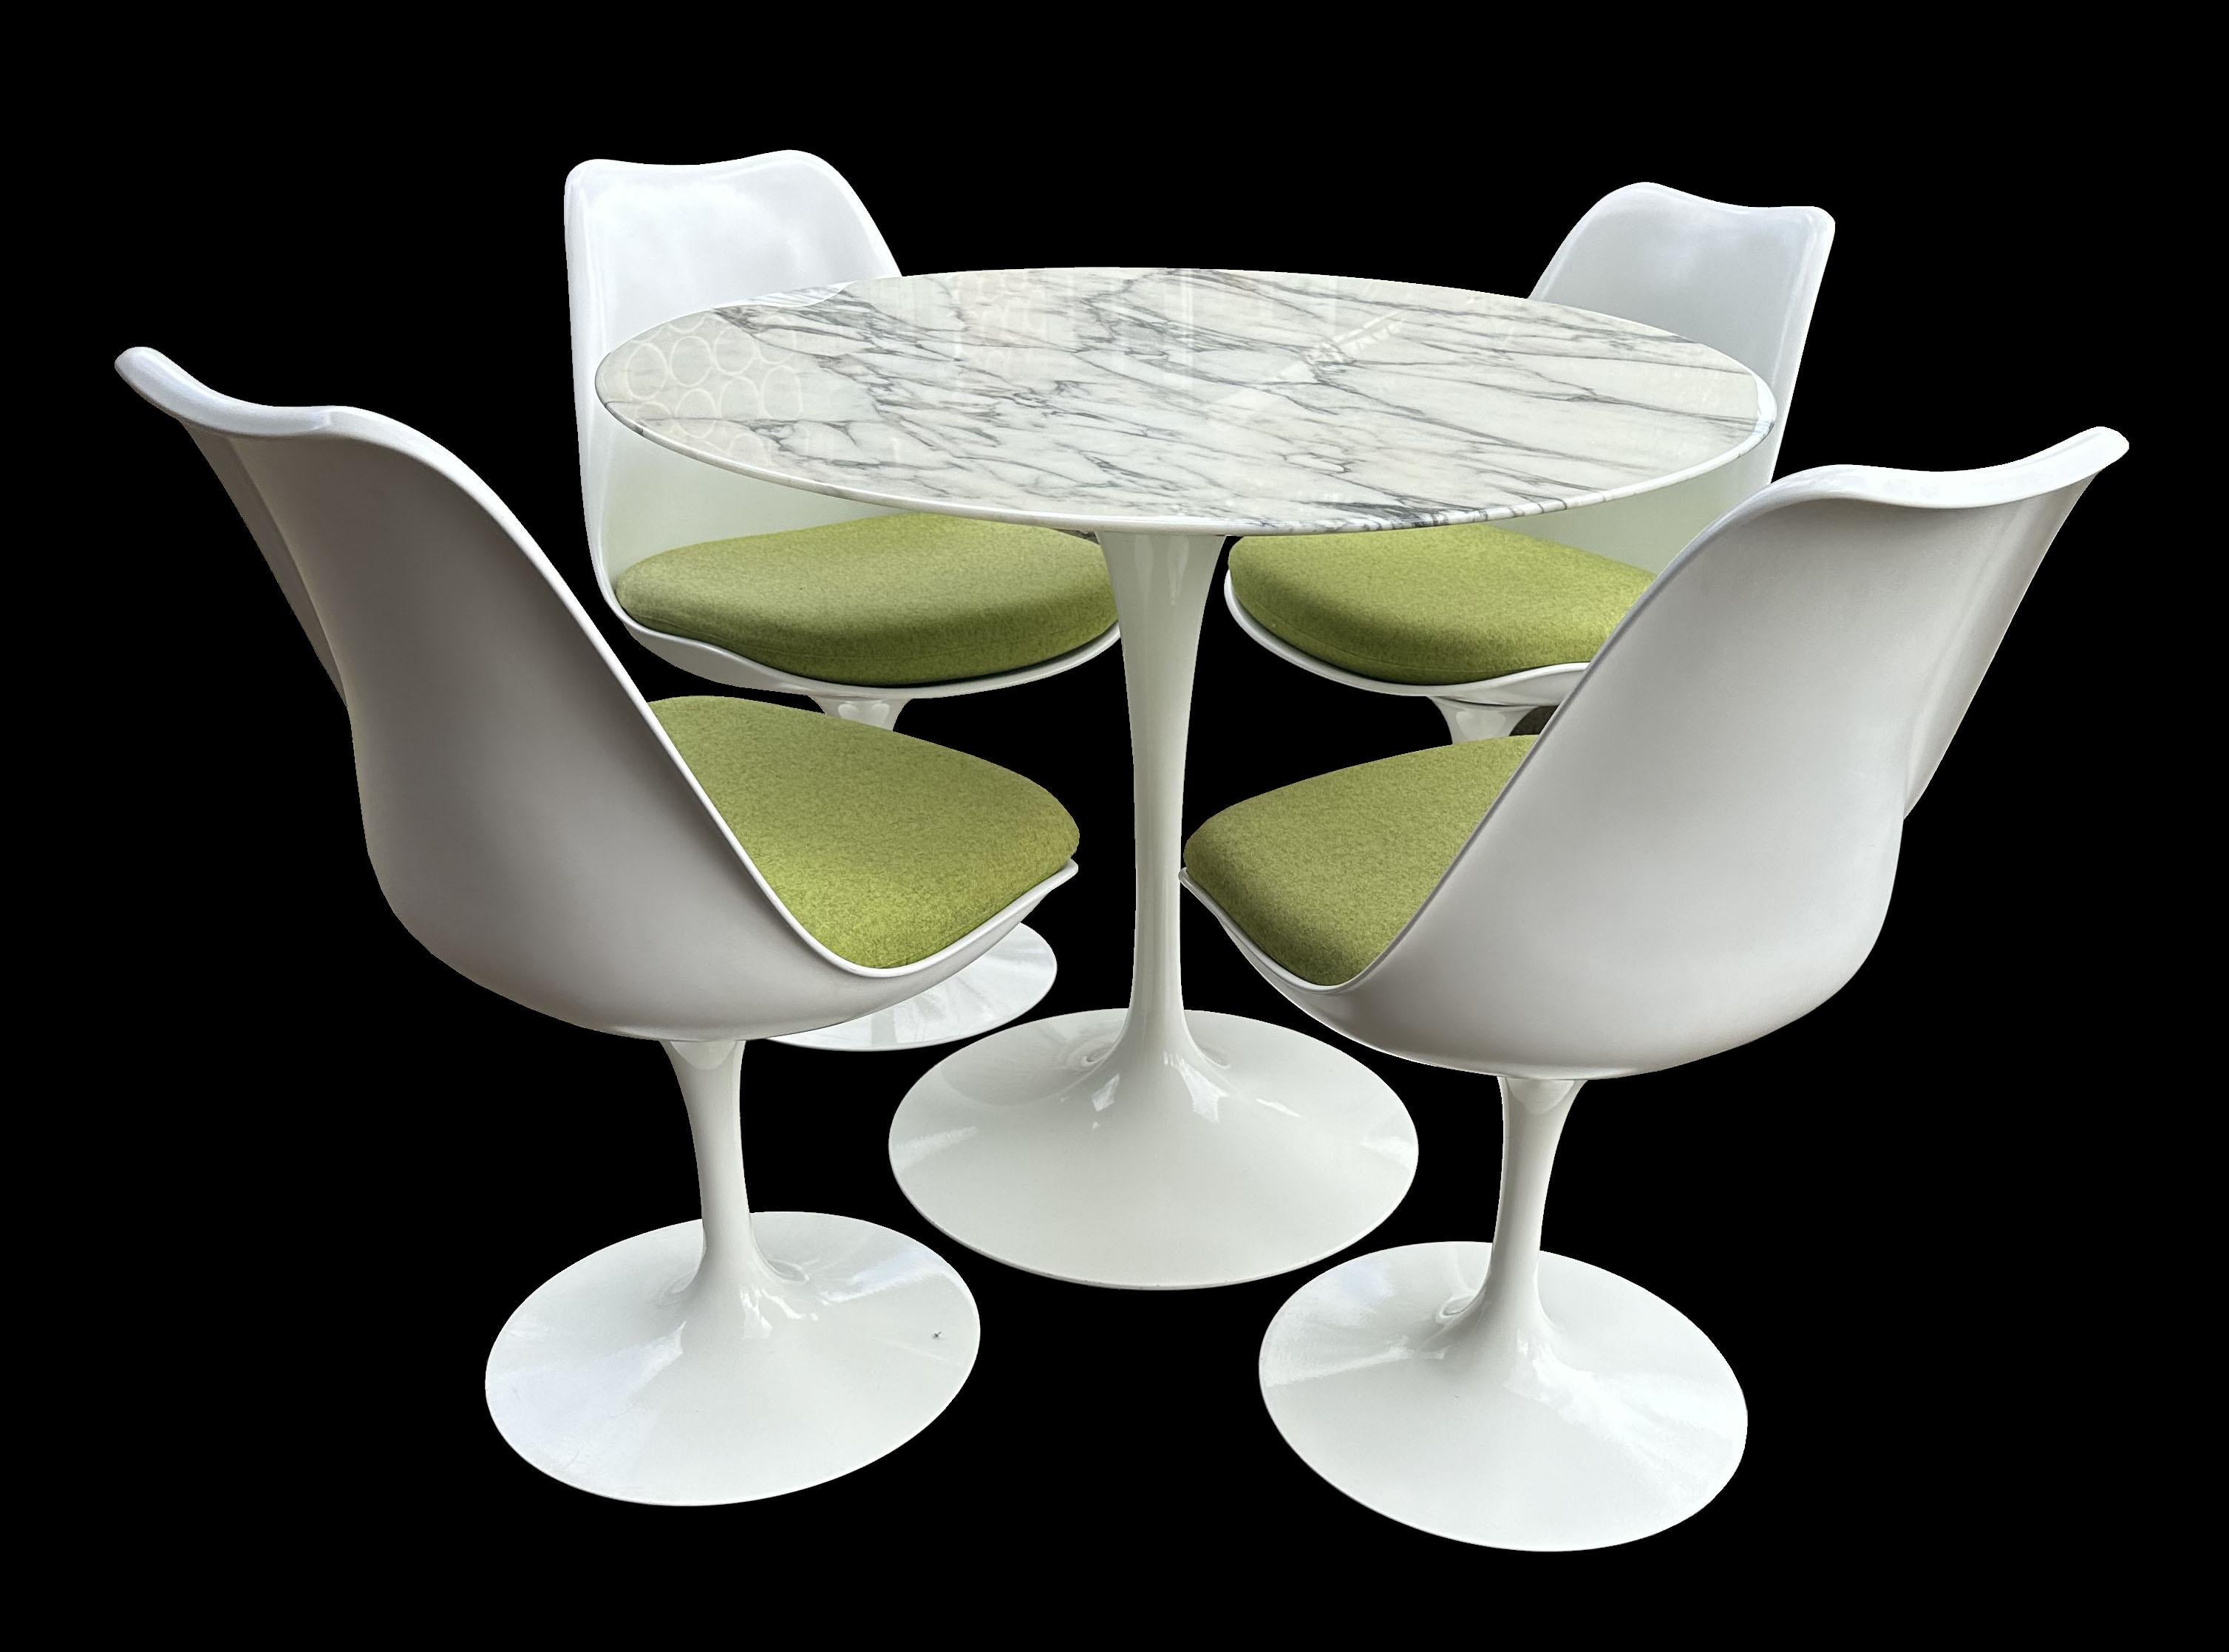 Ein wirklich gutes Beispiel für eine von Knoll produzierte Tulpengarnitur von Eero Saarinen.
Der Tisch mit Calacatta-Platte und die vier Drehstühle mit originalen grünen Knoll-Stoffpolstern sind in einem sehr guten Zustand.
Der Tisch ist 72 cm hoch